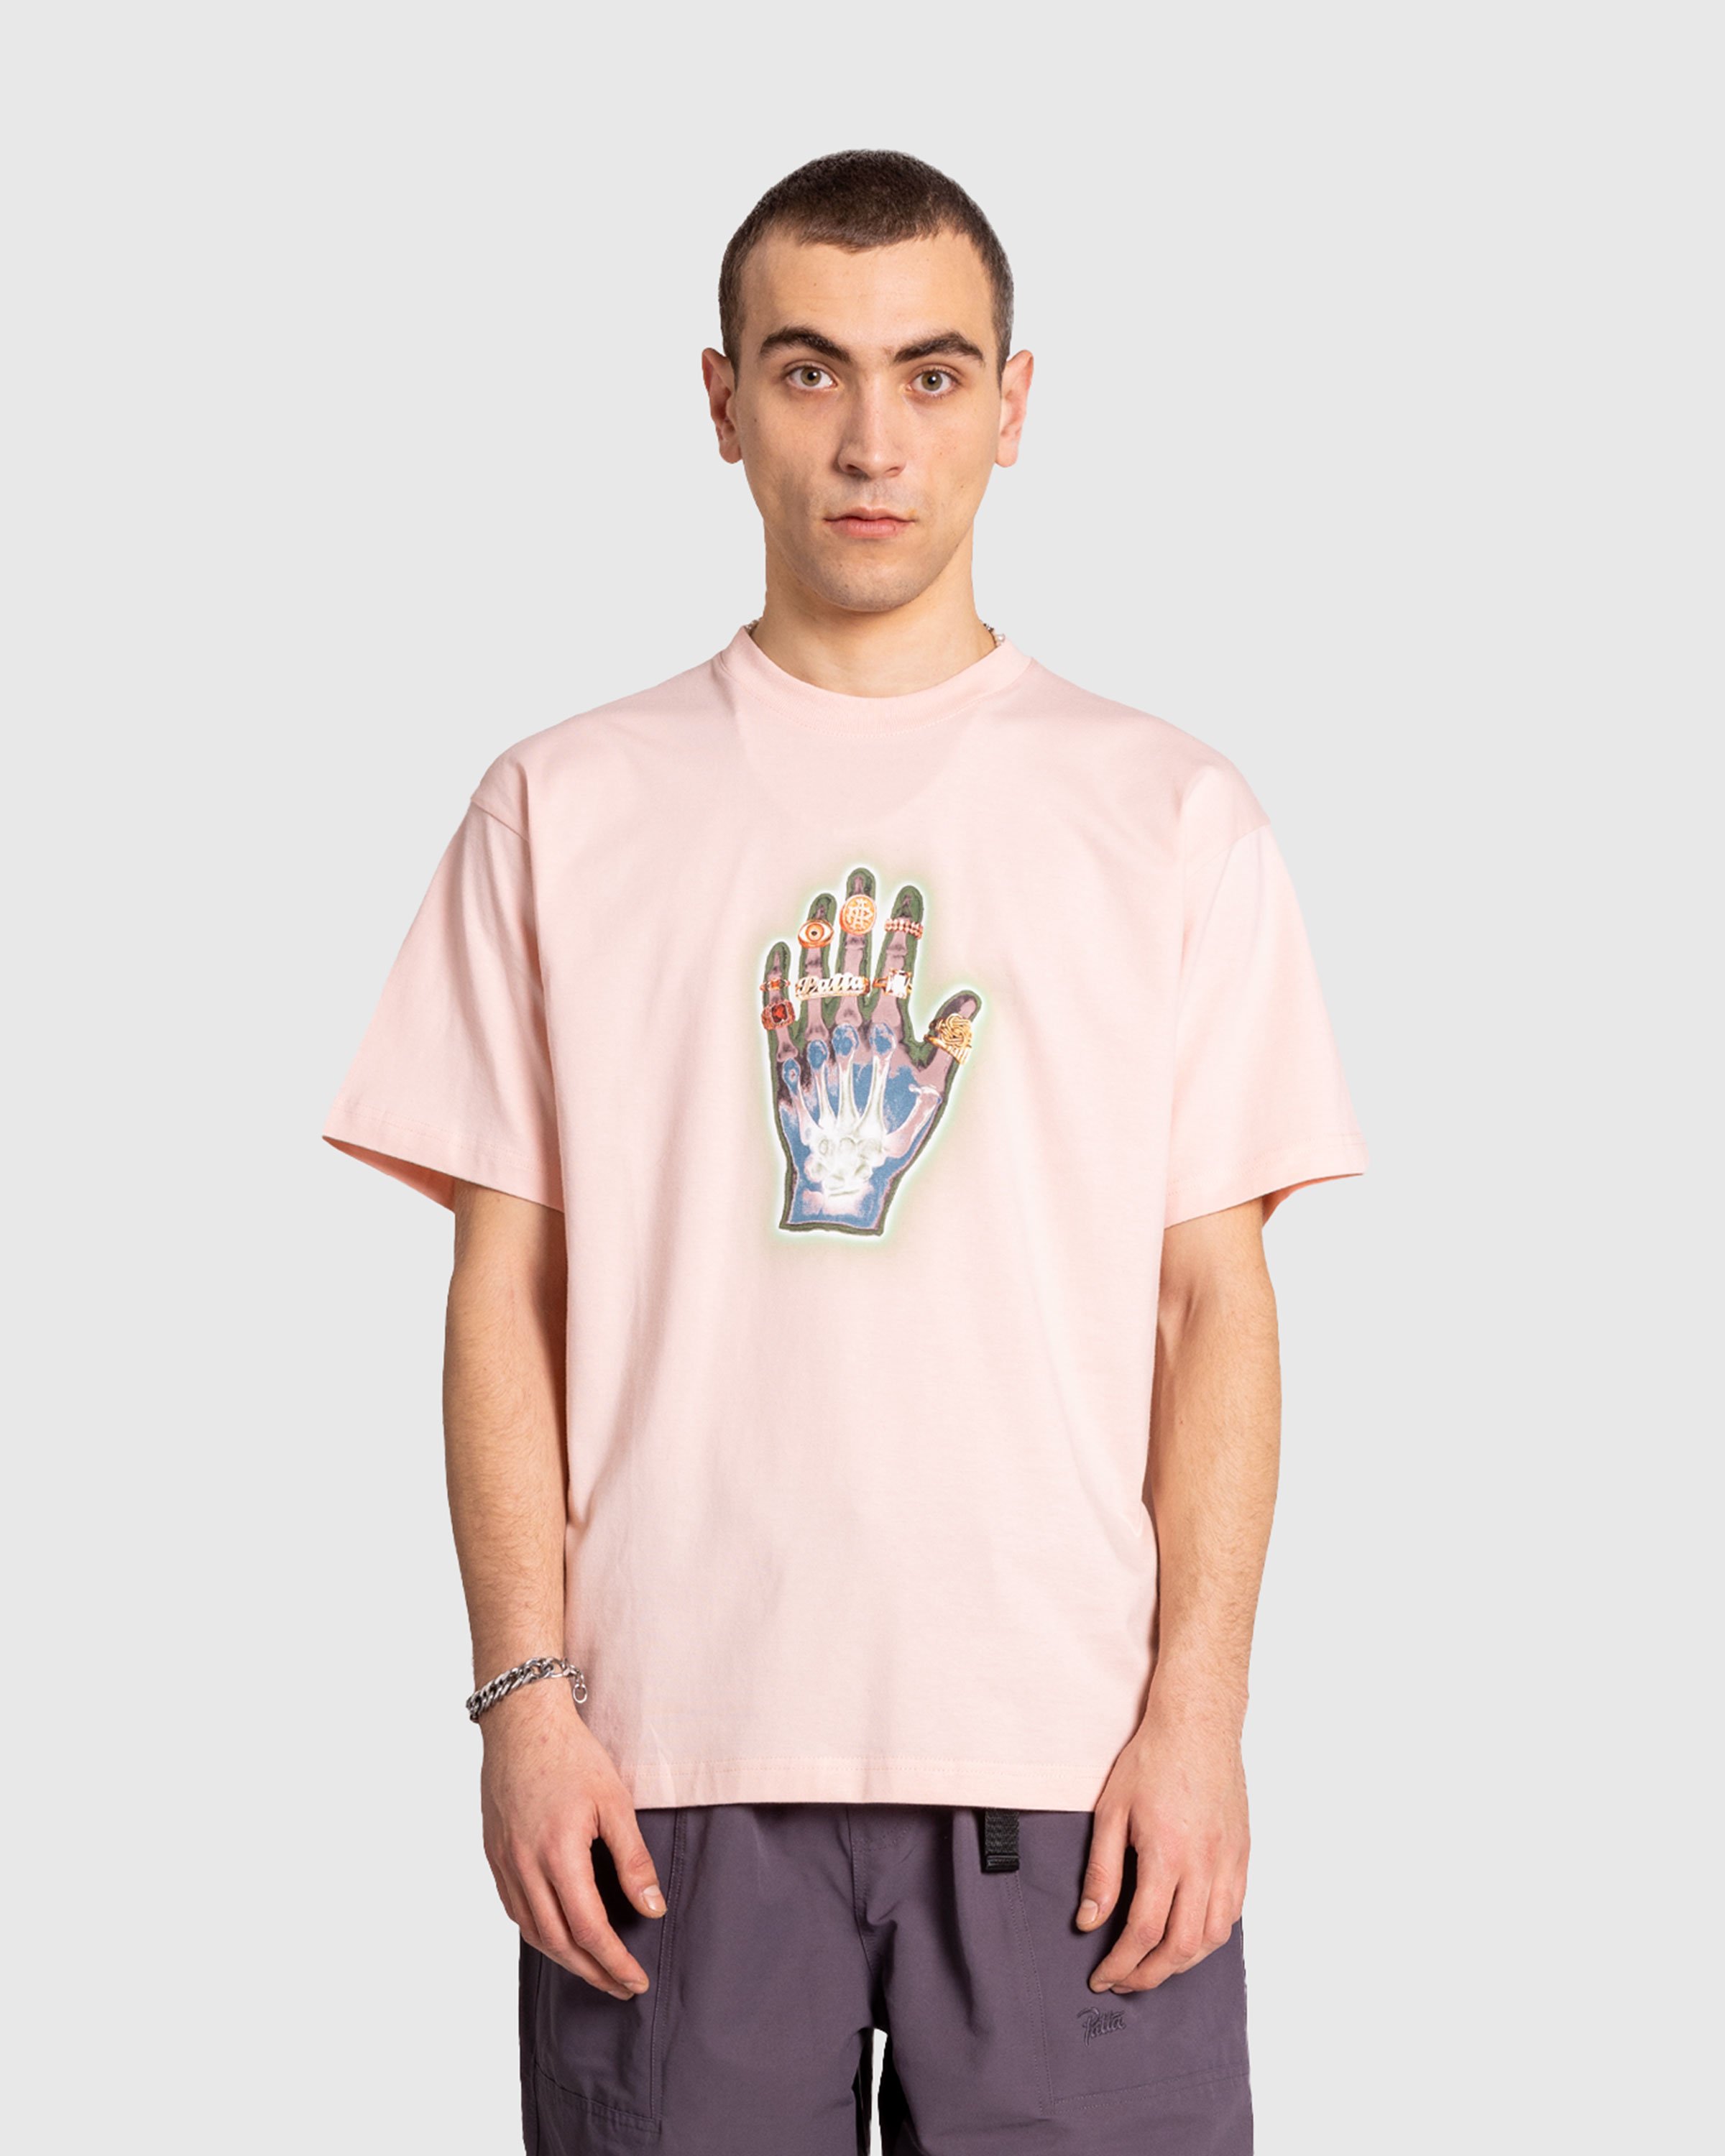 Patta - Healing Hands T-Shirt Lotus - Clothing - Pink - Image 2